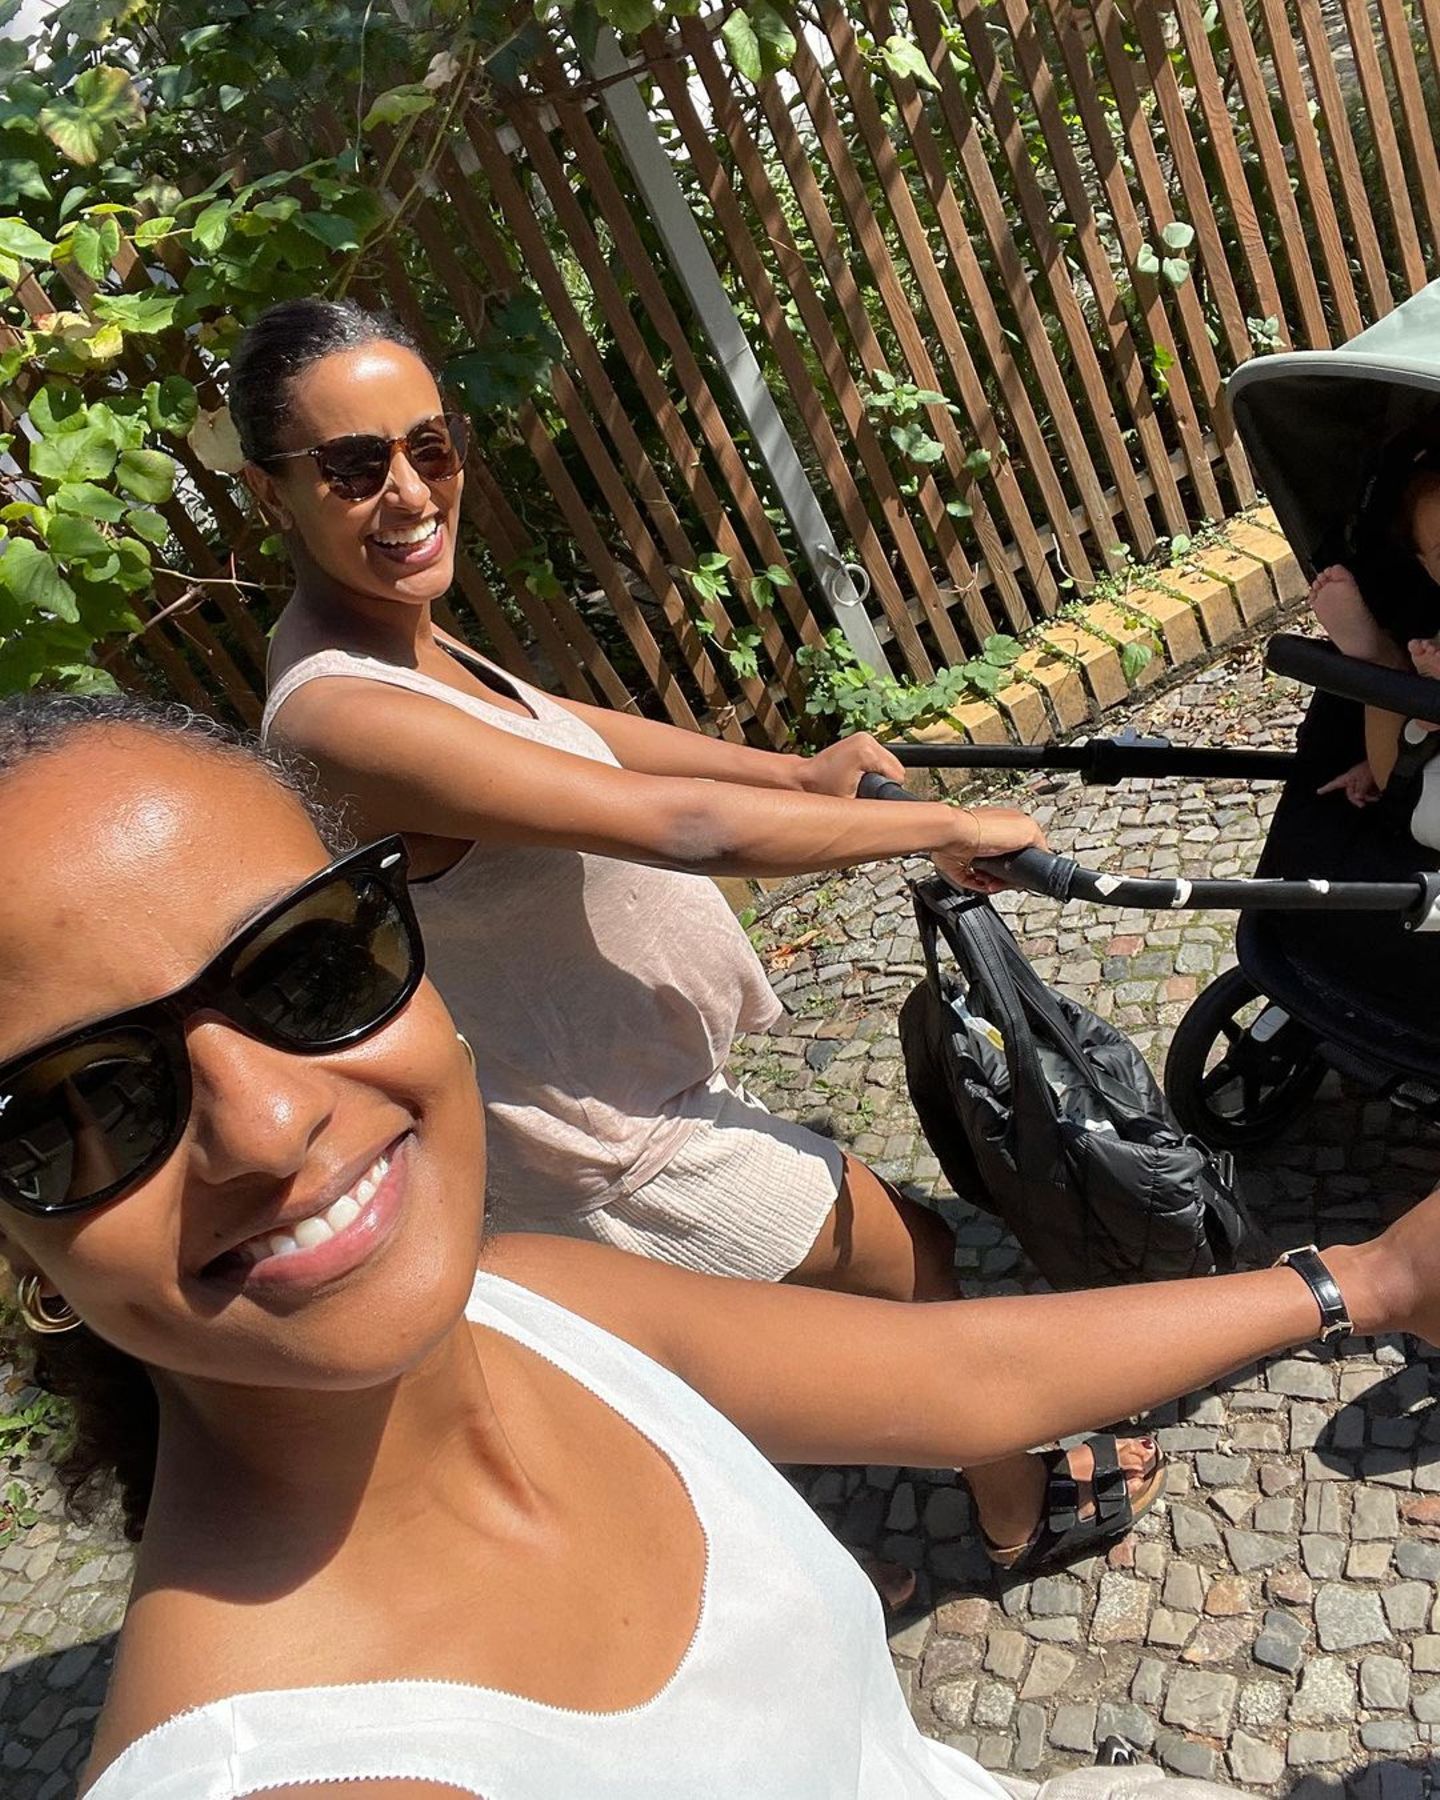 Promi-Eltern: Sara Nuru mit Schwester und Baby unterwegs